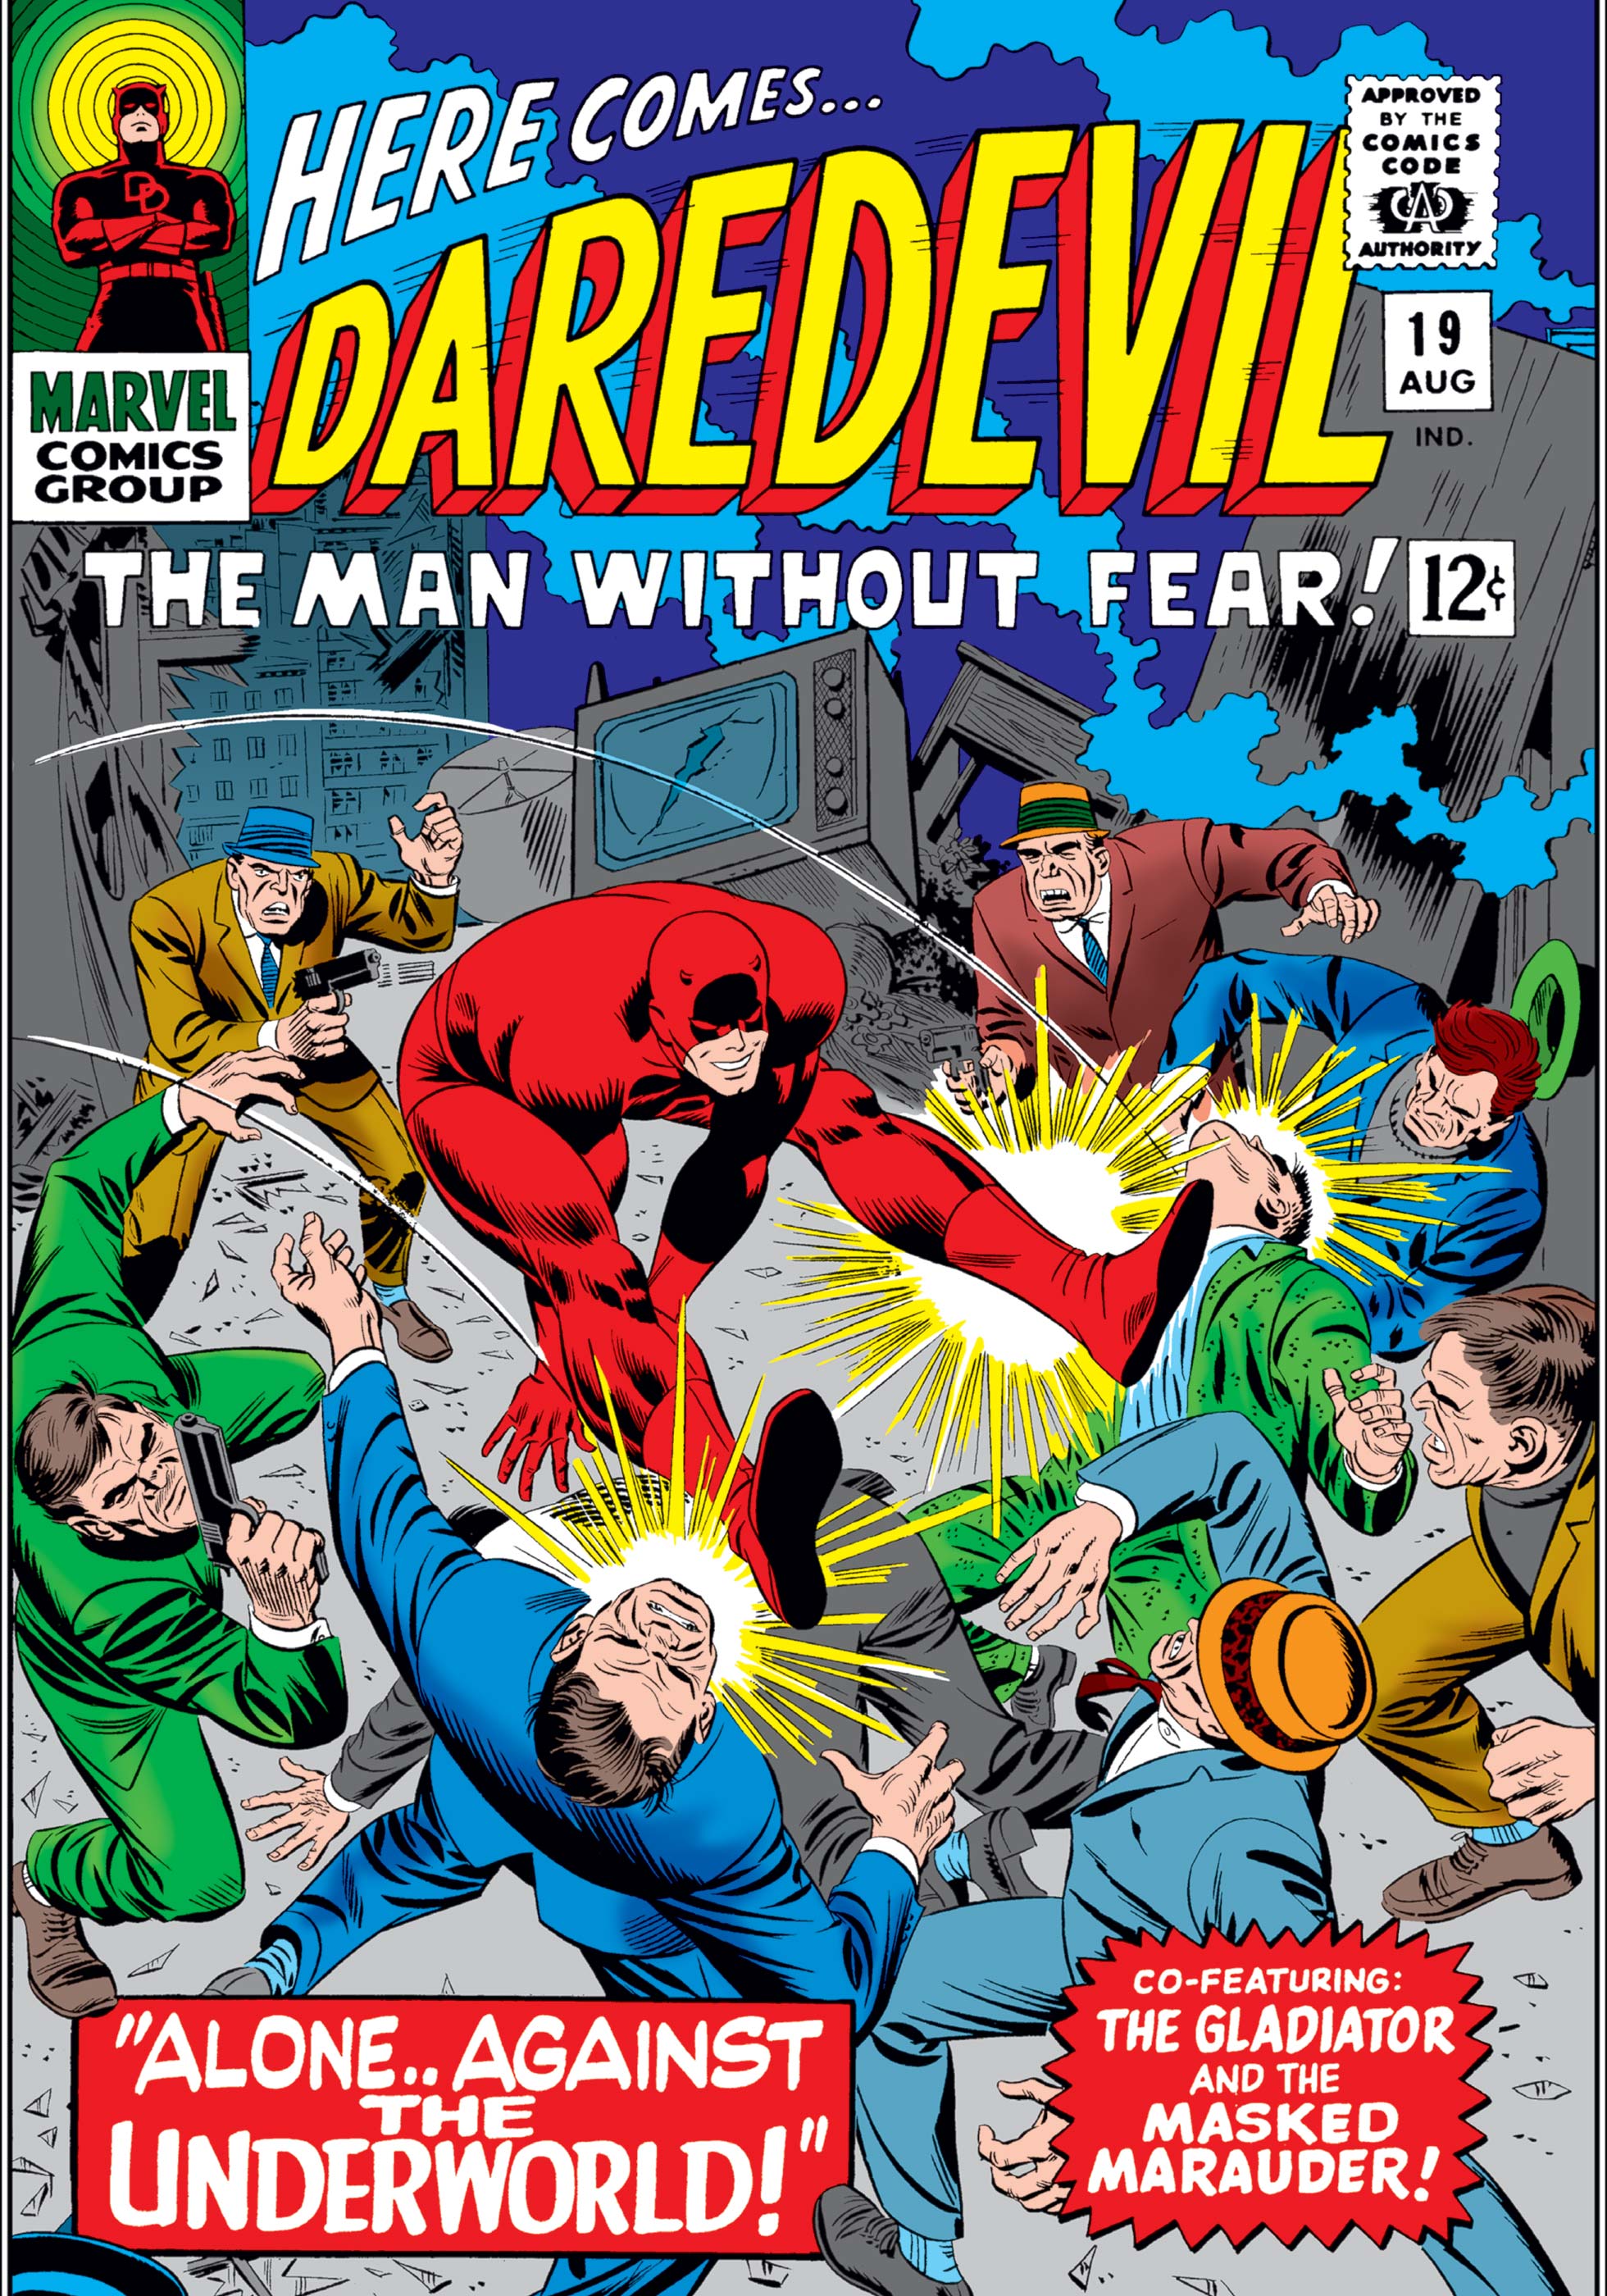 Daredevil (1964) #19